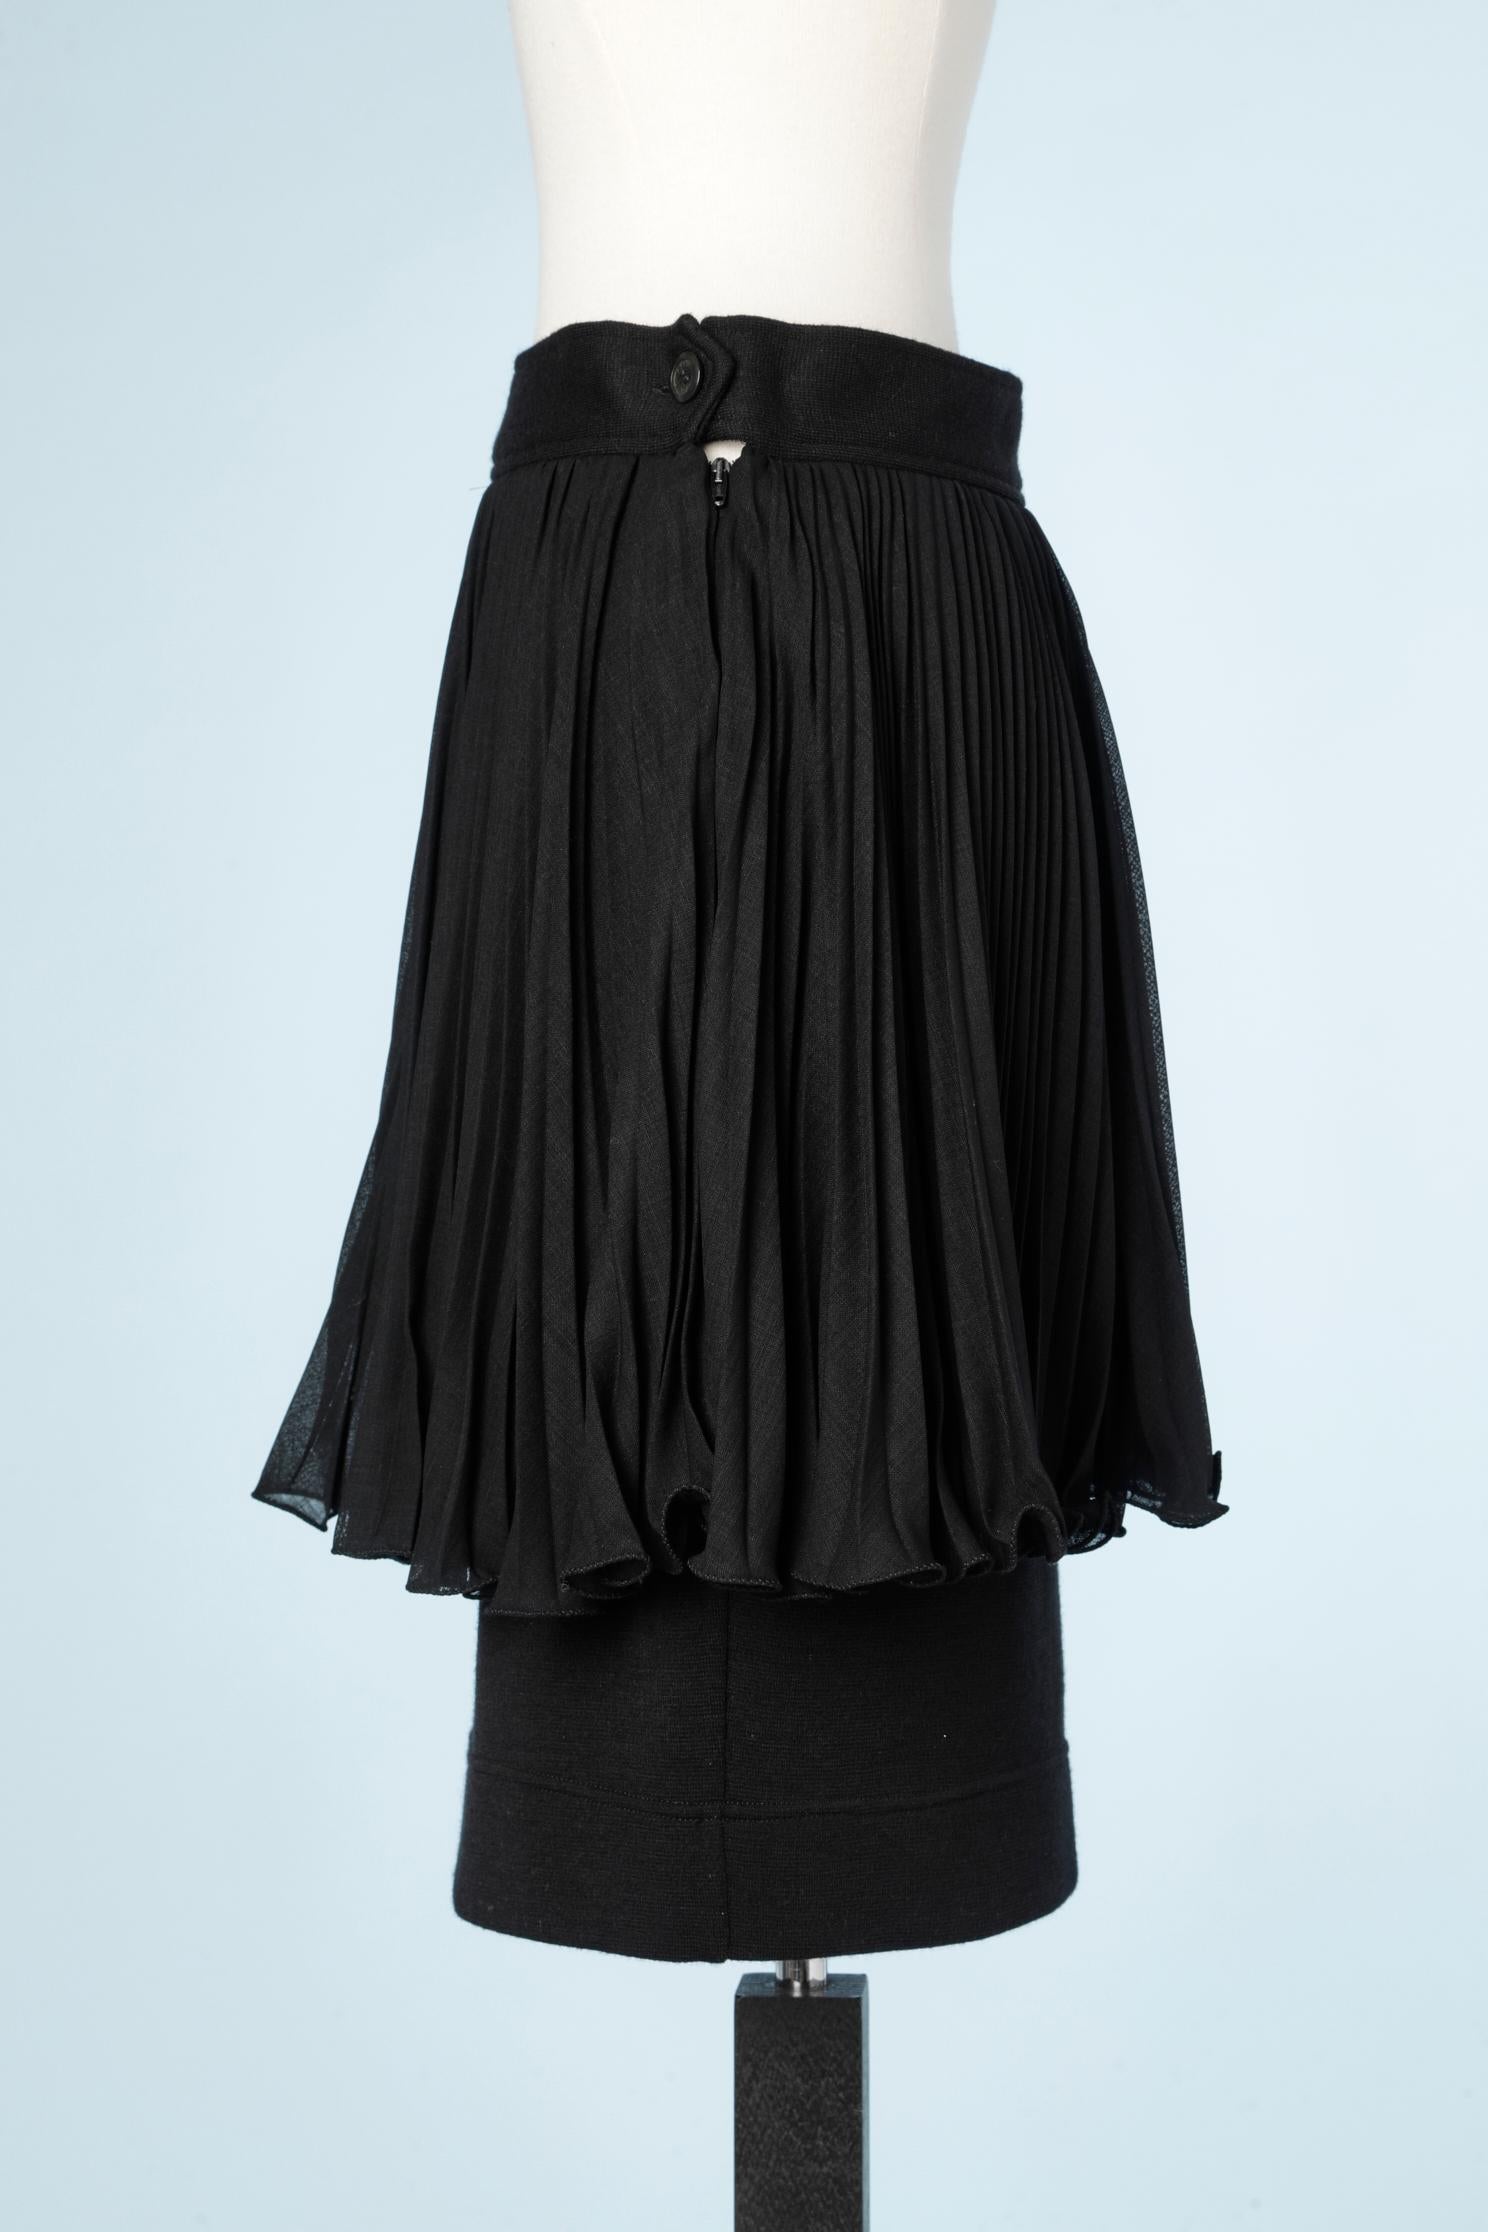 layered black skirt